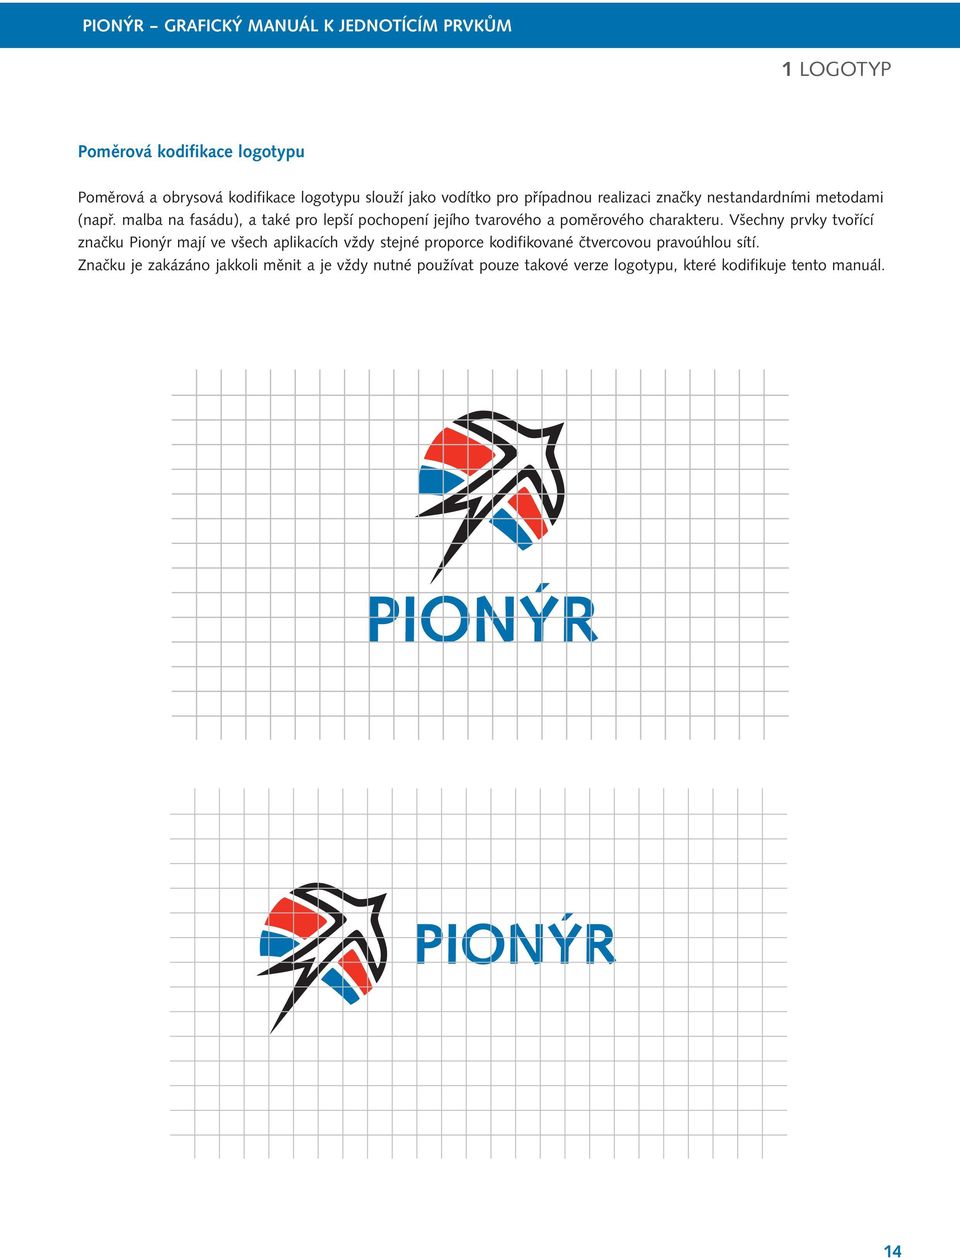 Všechny prvky tvořící značku Pionýr mají ve všech aplikacích vždy stejné proporce kodifikované čtvercovou pravoúhlou